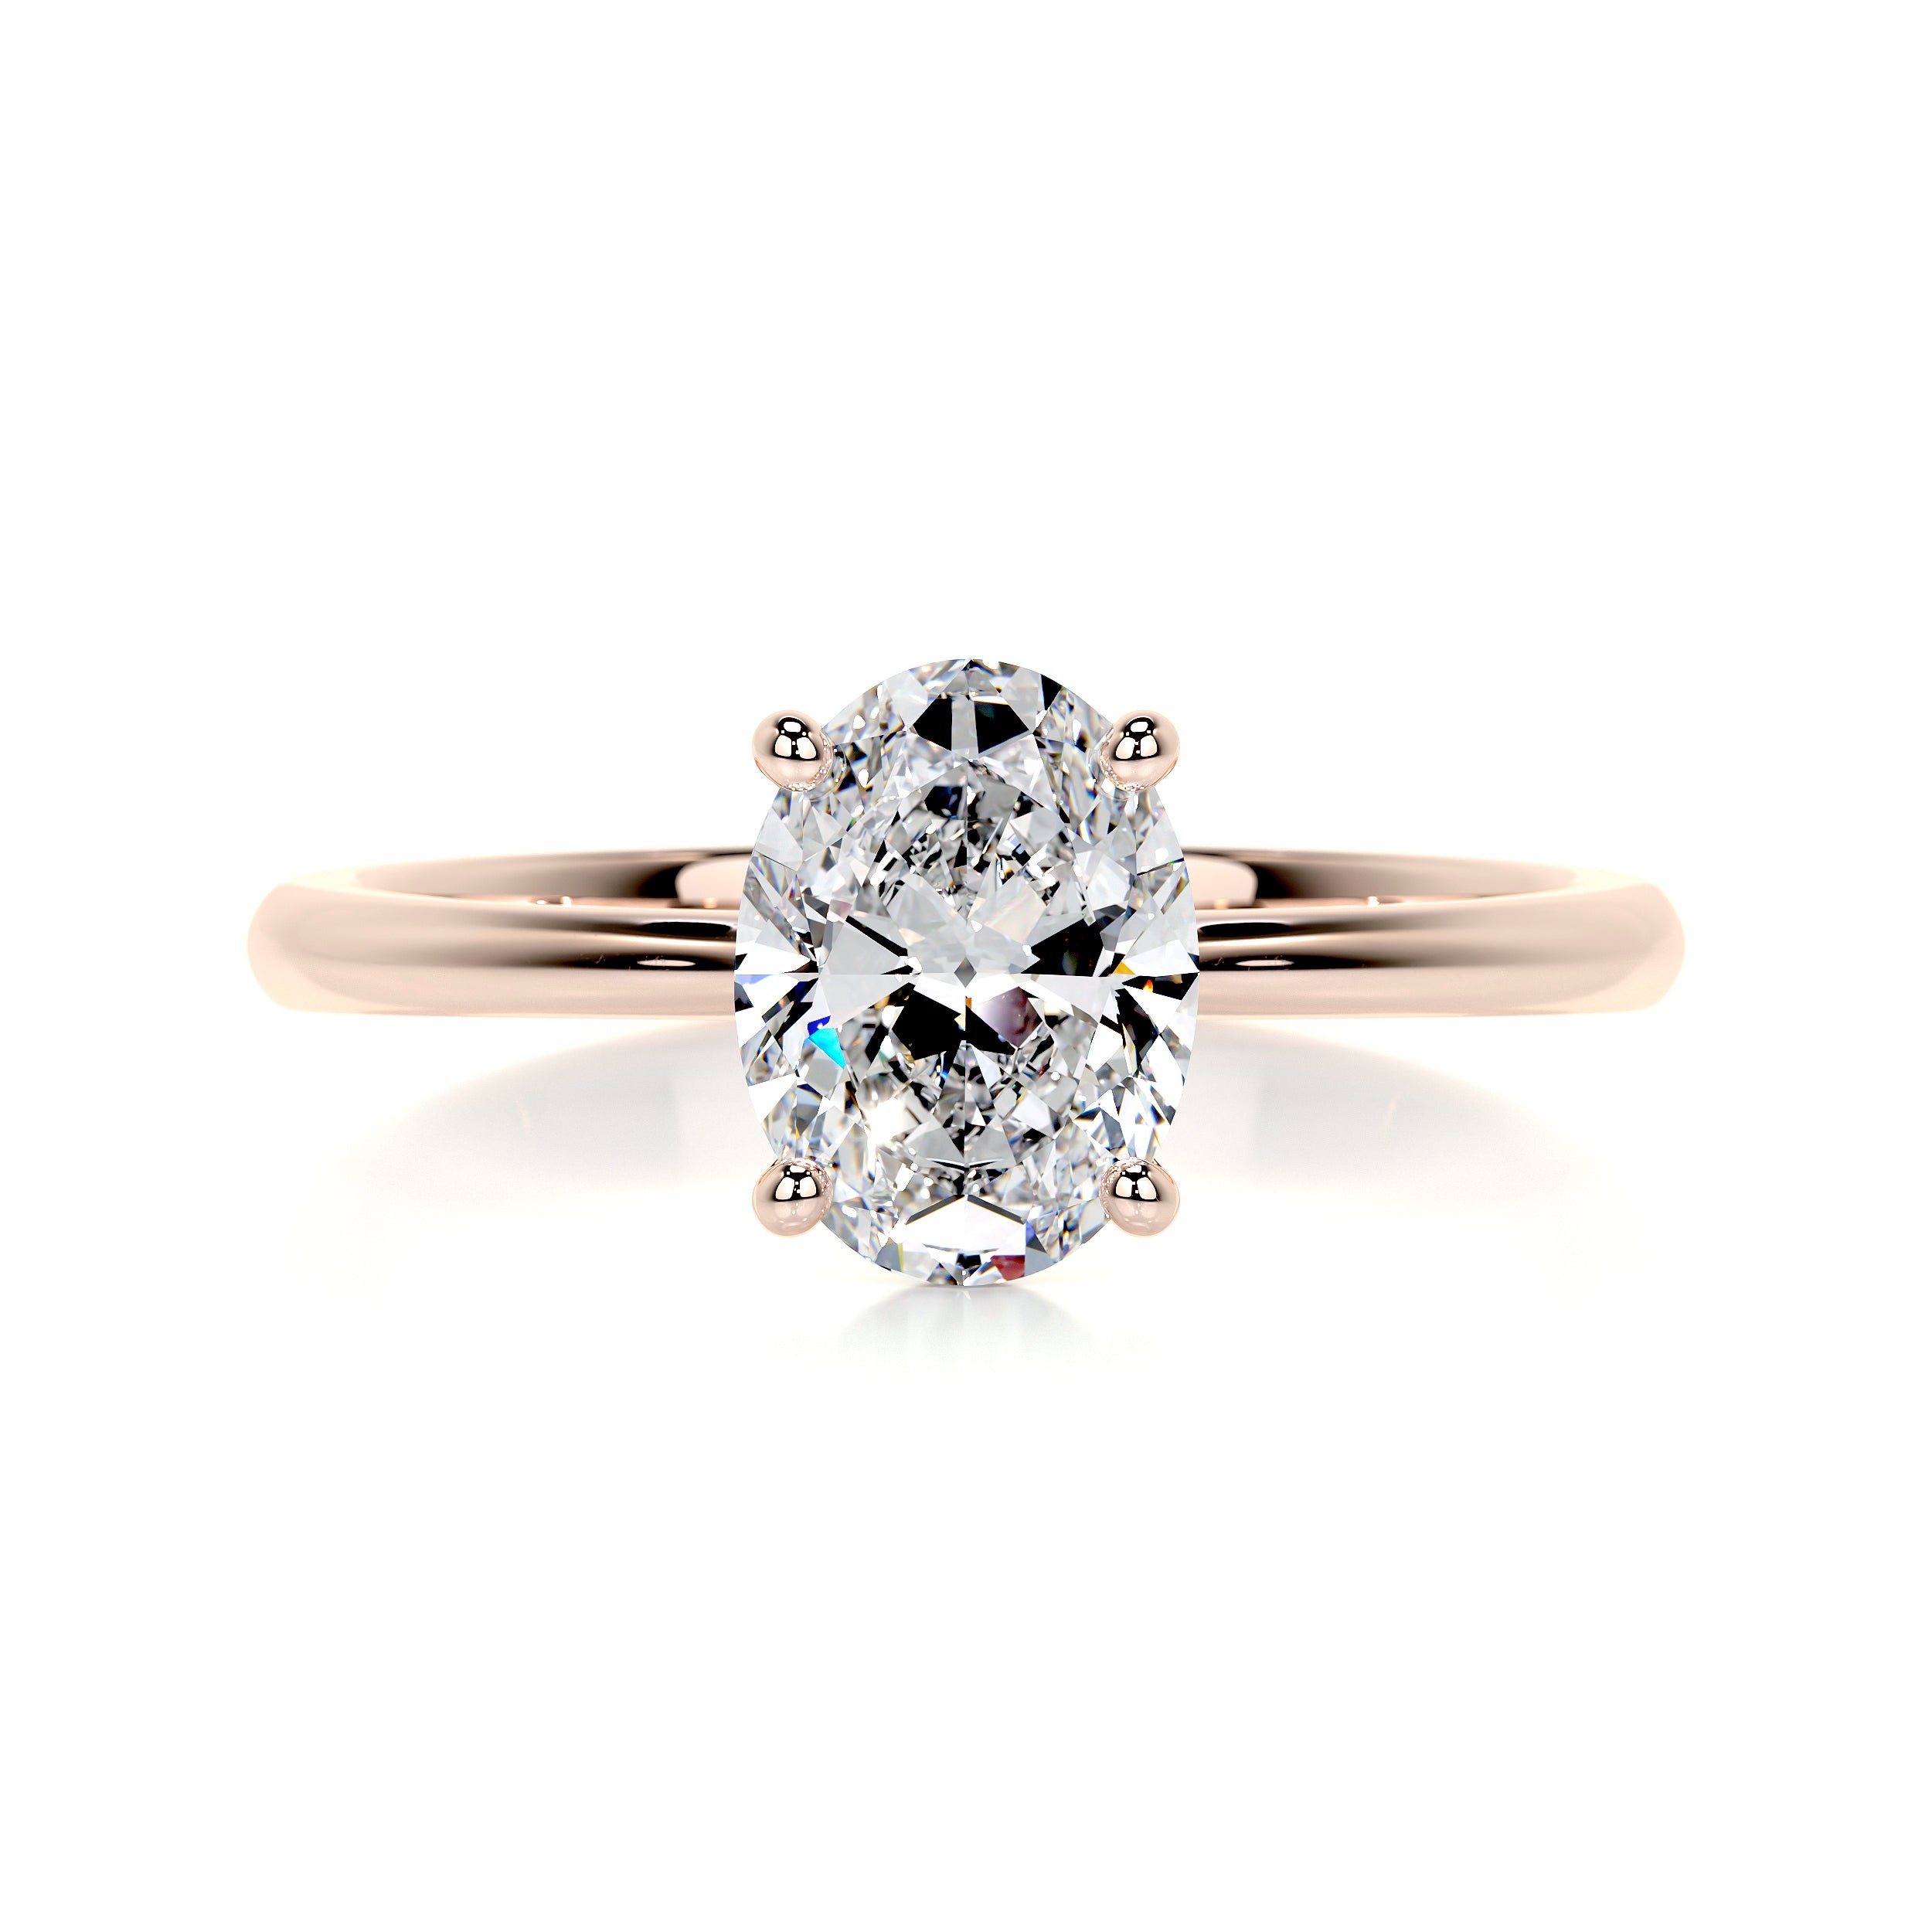 Julia Diamond Engagement Ring -14K Rose Gold